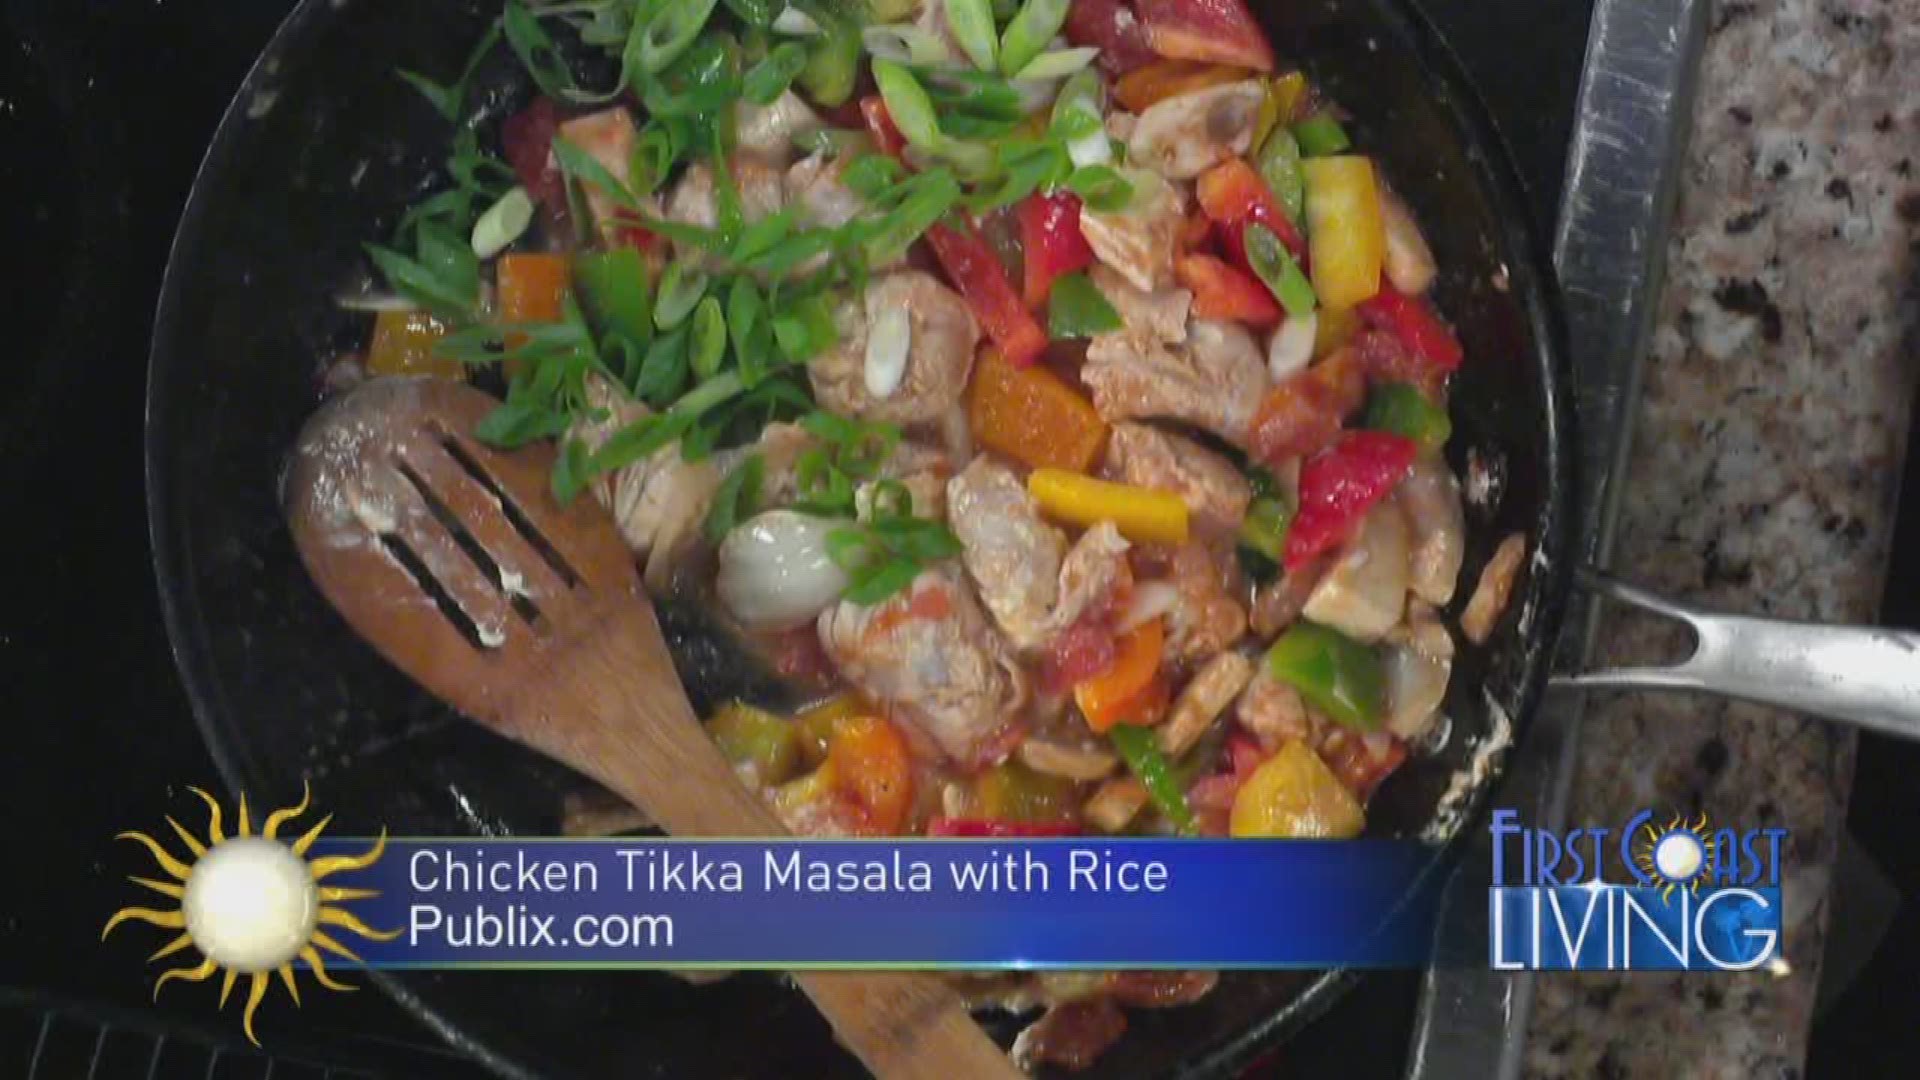 Publix Recipes - Chicken Tikka Masala